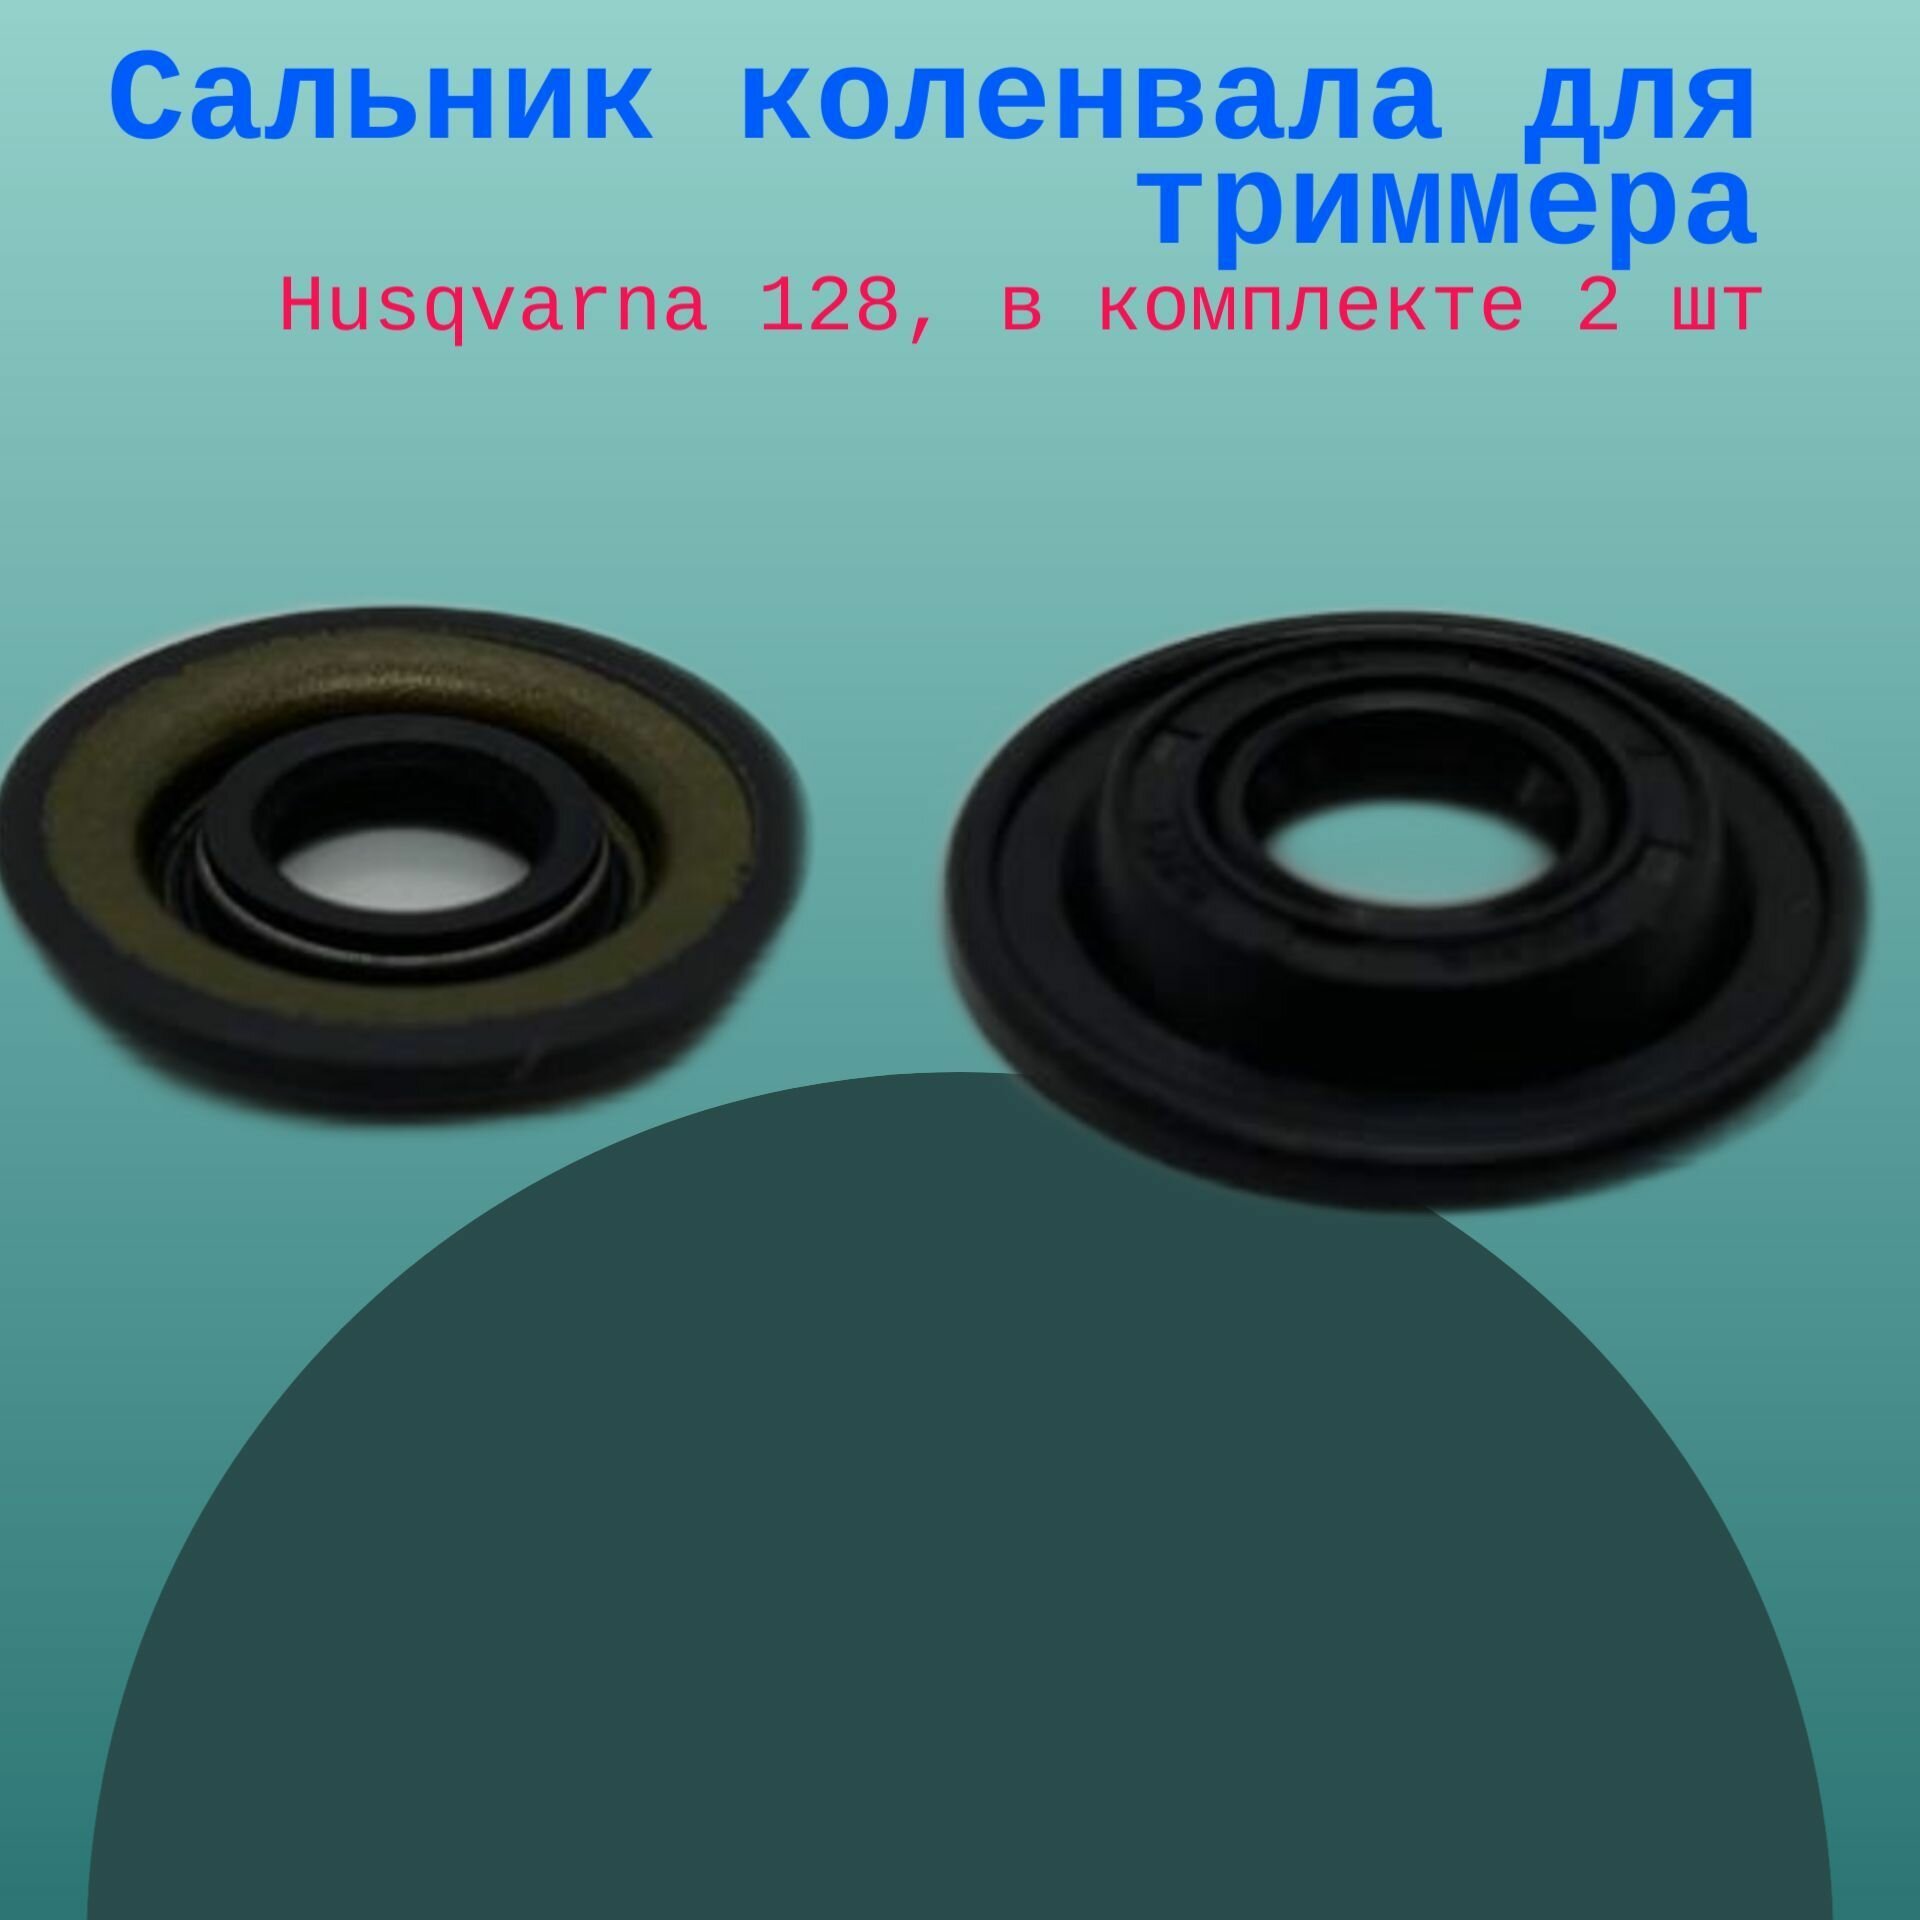 Сальник коленвала для триммера Husqvarna 128, в комплекте 2 шт